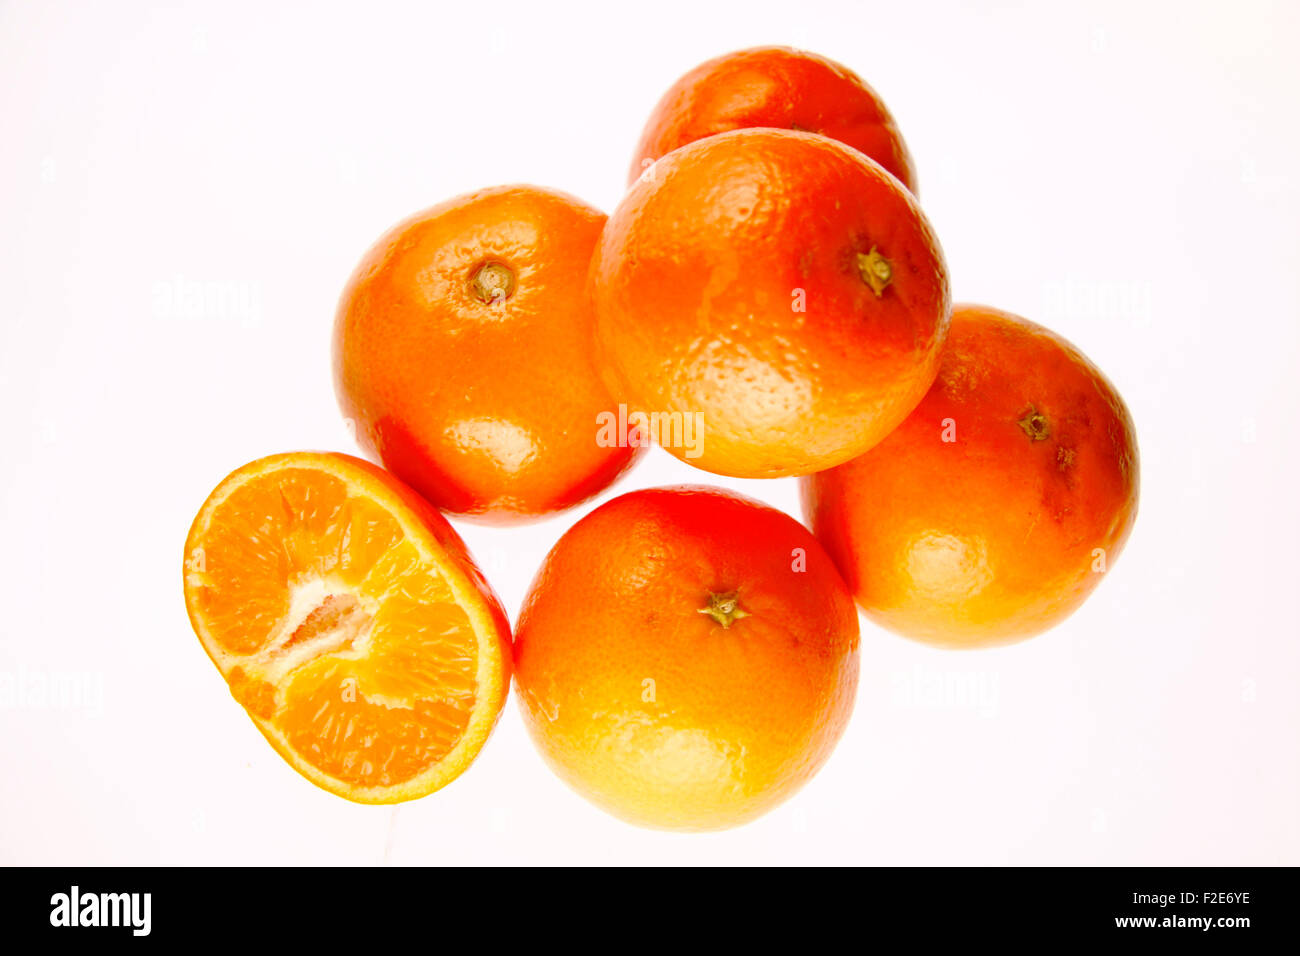 Suedfruechte: Zitrone, Mandarine, Clementine, Orange - Symbolbild Nahrungsmittel. Stock Photo